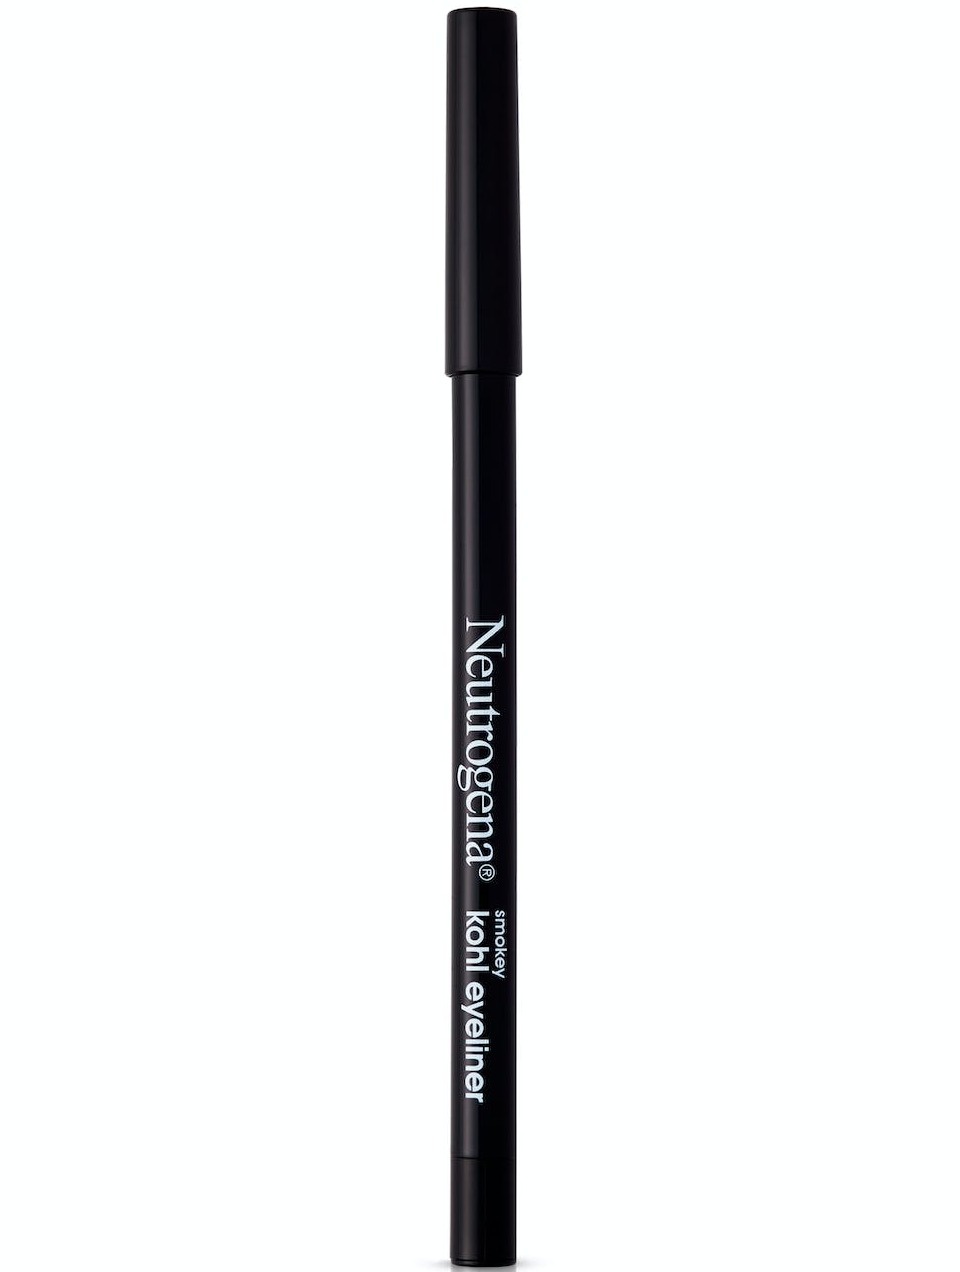 Neutrogena Smokey Kohl Water-resistant Eyeliner, Jet Black